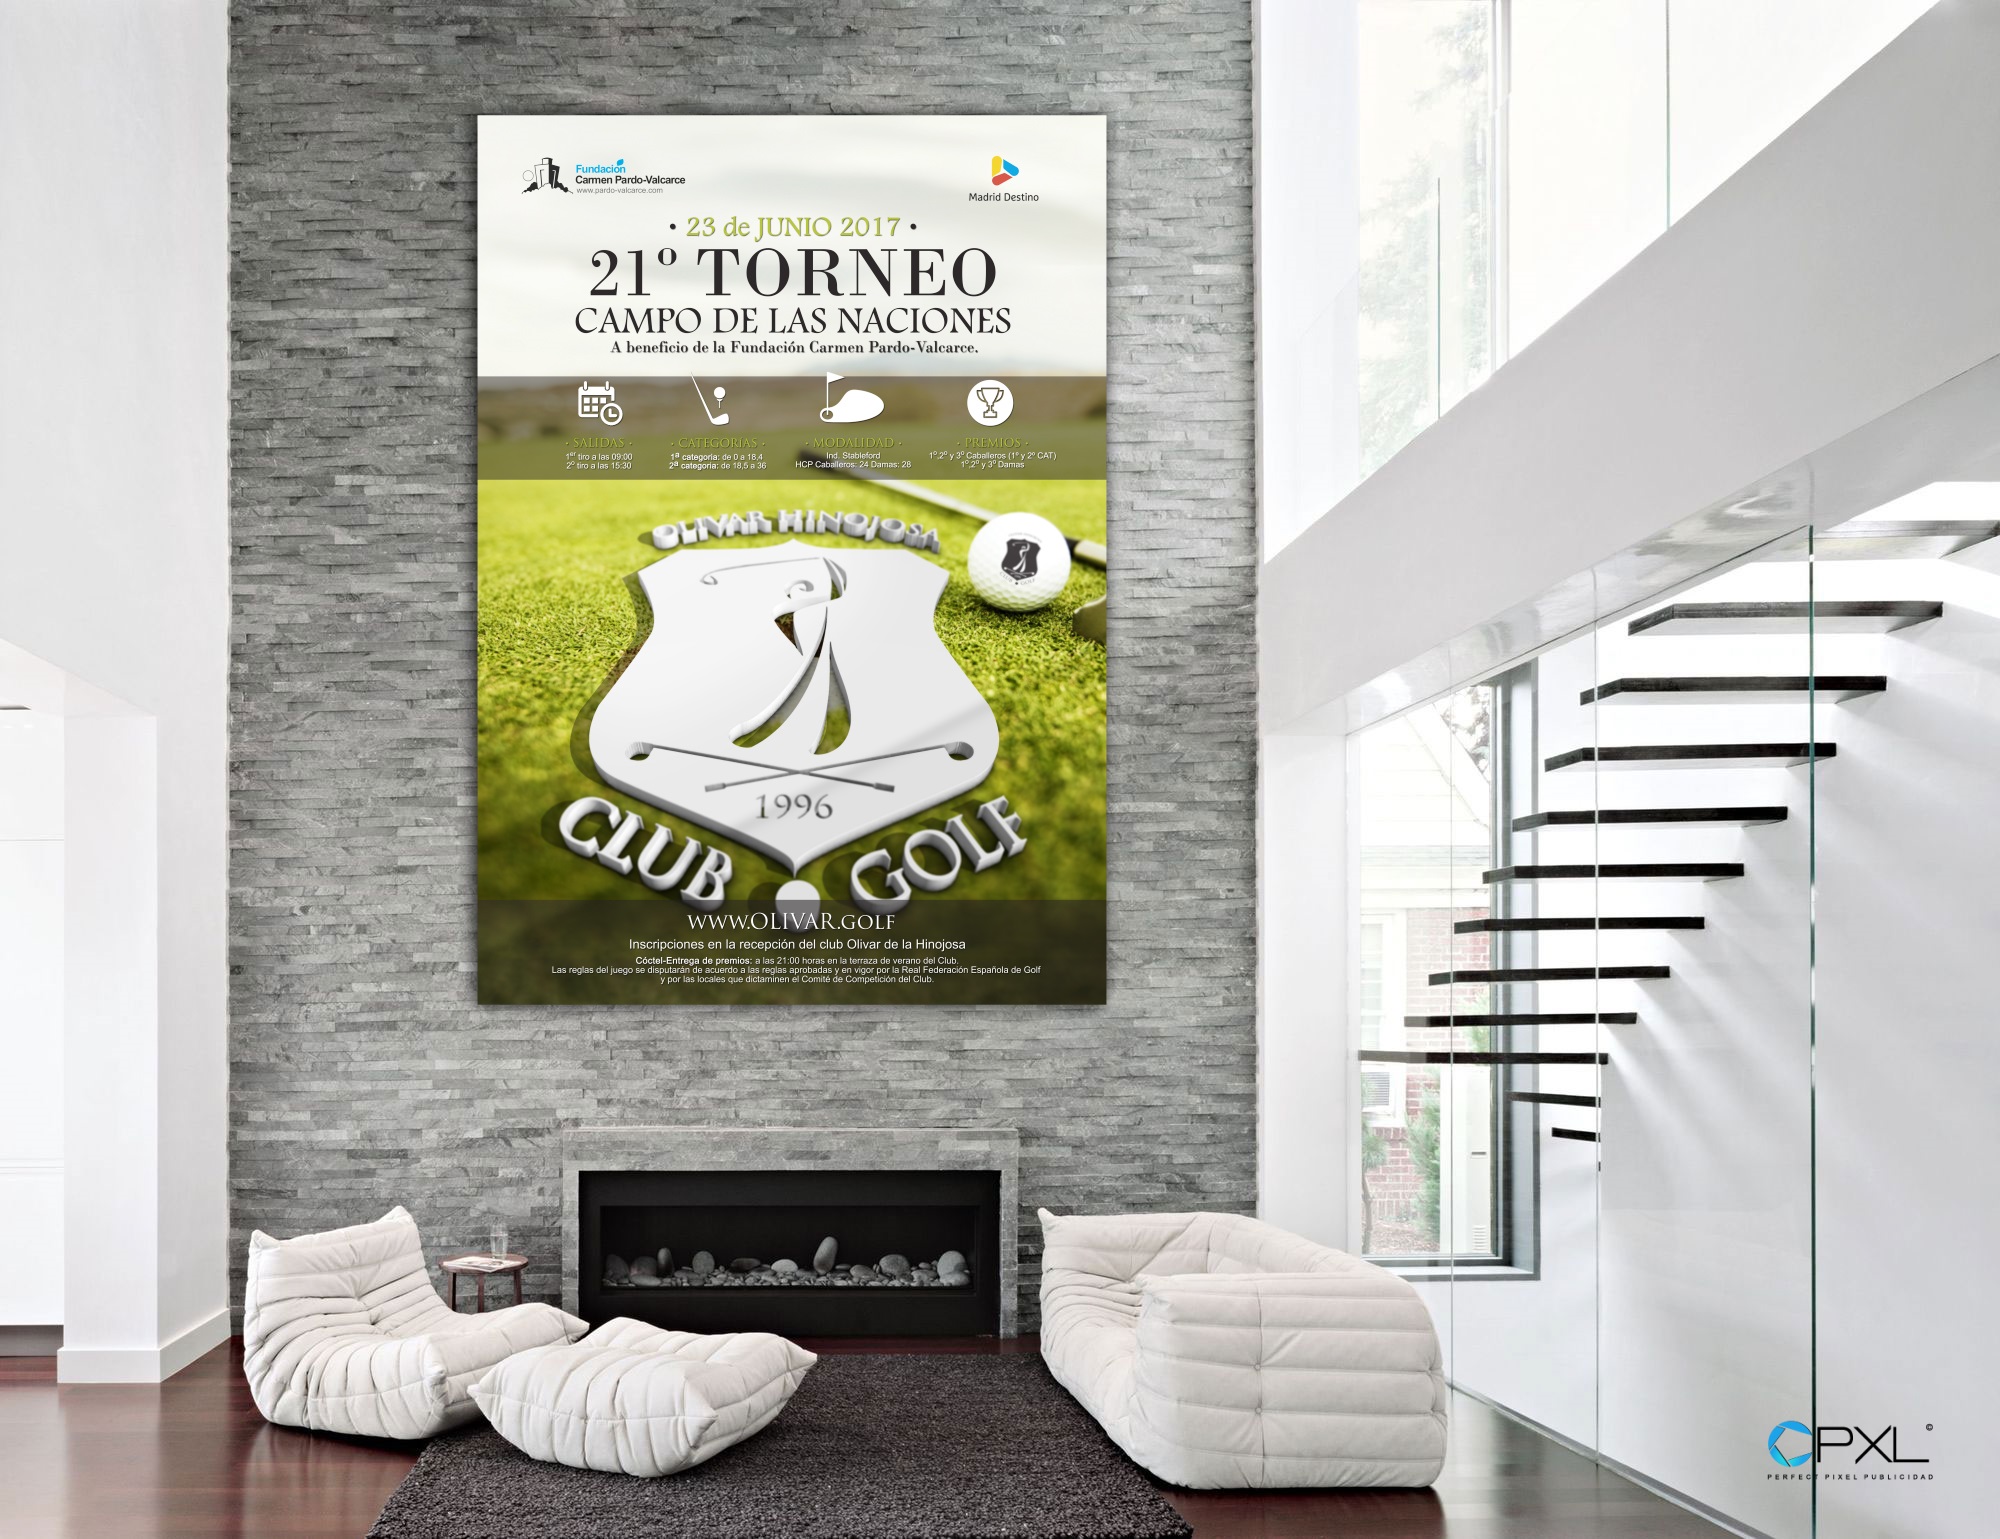 Diseño cartelería para 21º torneo de golf Madrid Destino - Campo de las Naciones